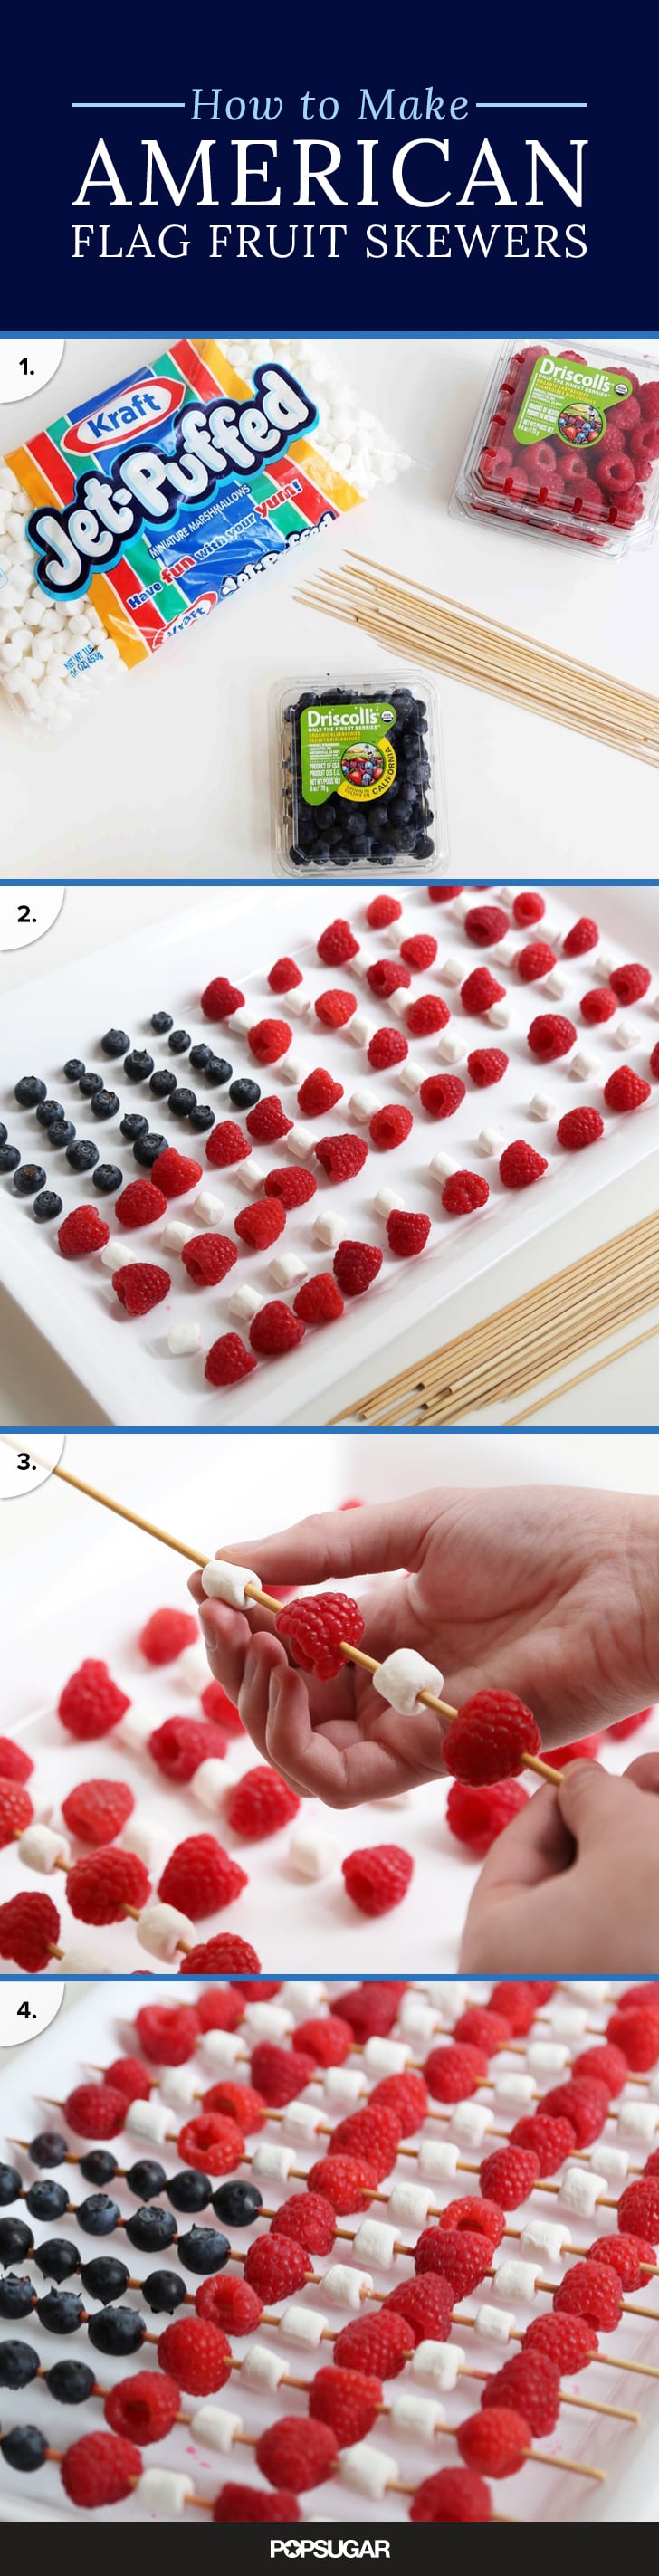 How to Make American Flag Fruit Skewers